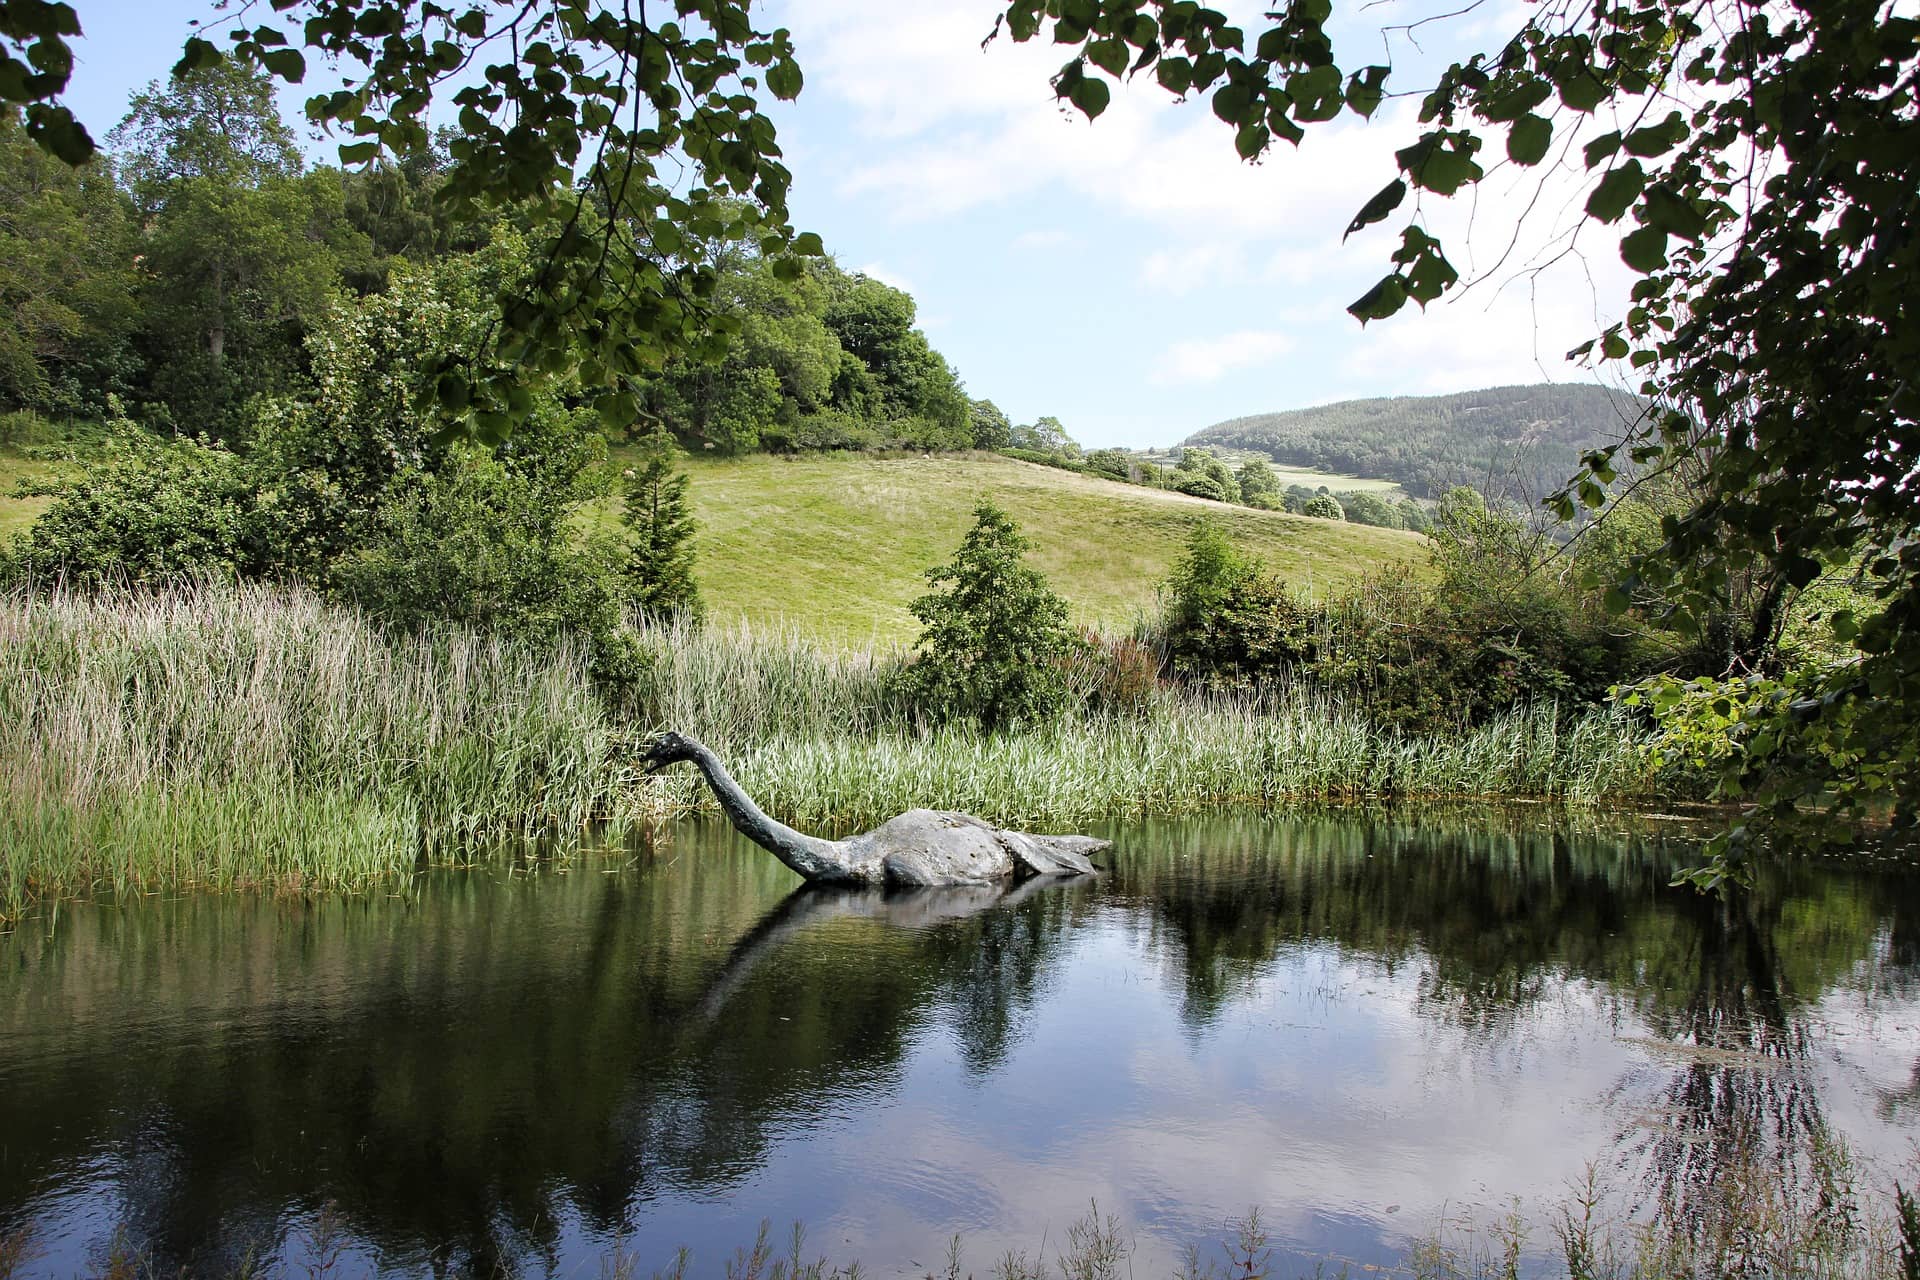 Loch Ness Monster in scotland